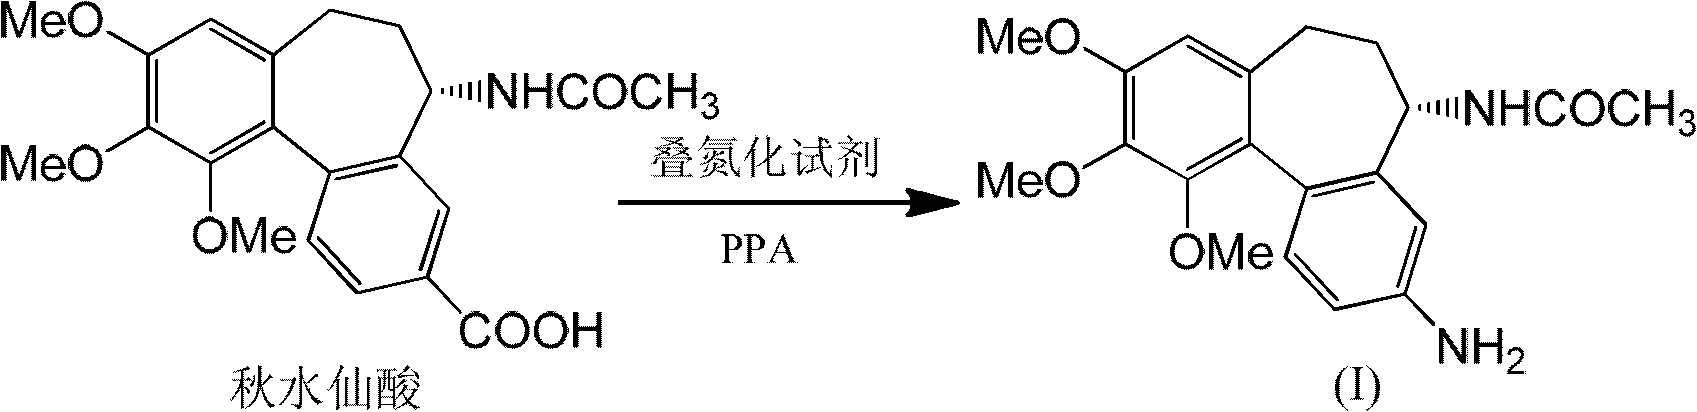 Method for preparing intermediate of colchicine derivatives